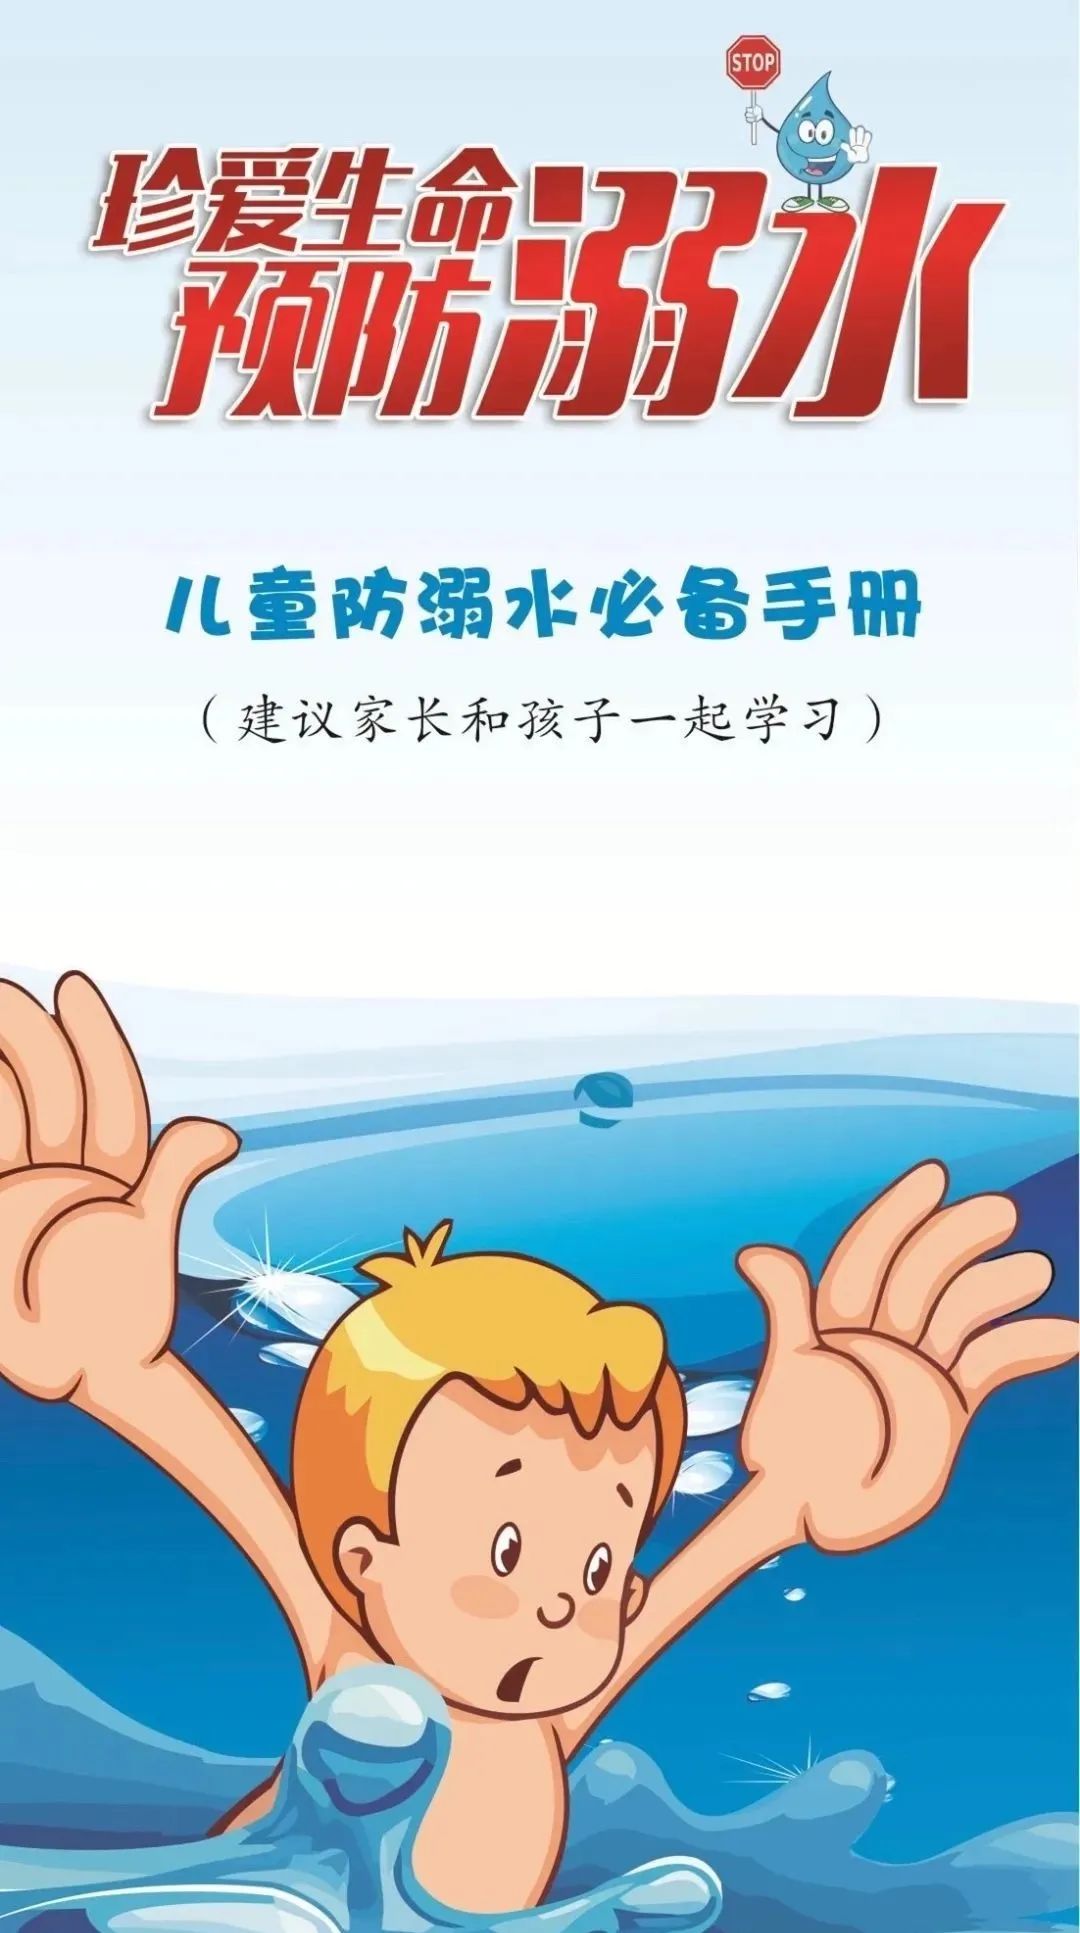 临沂第九中学南昌路校区开展“防溺水”系列宣传教育活动-在临沂